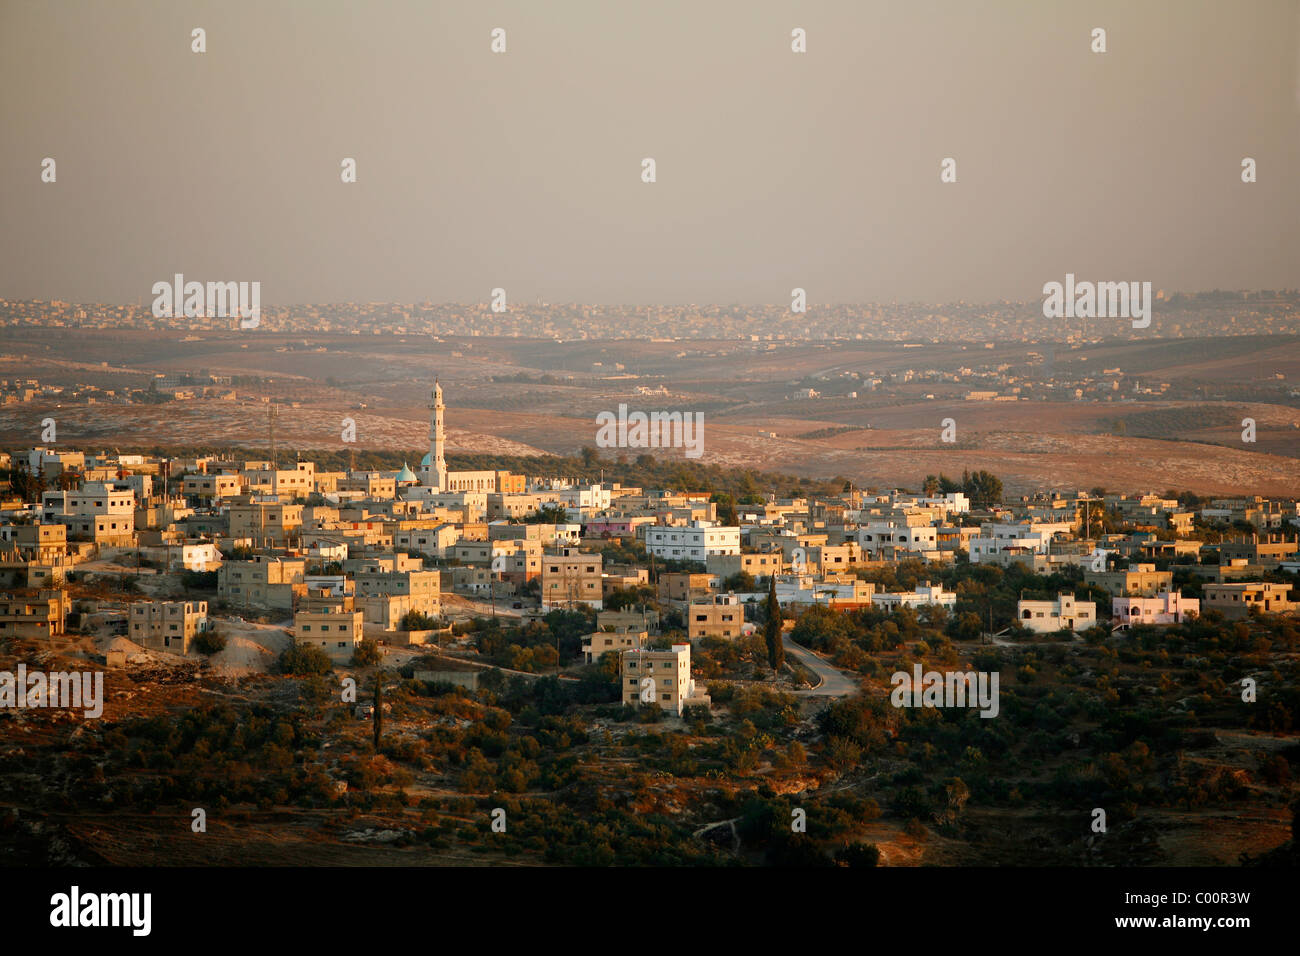 Un typique village commun et voir et paysage dans le nord du pays, pris entre Umm Qais et Ajloun. La Jordanie. Banque D'Images